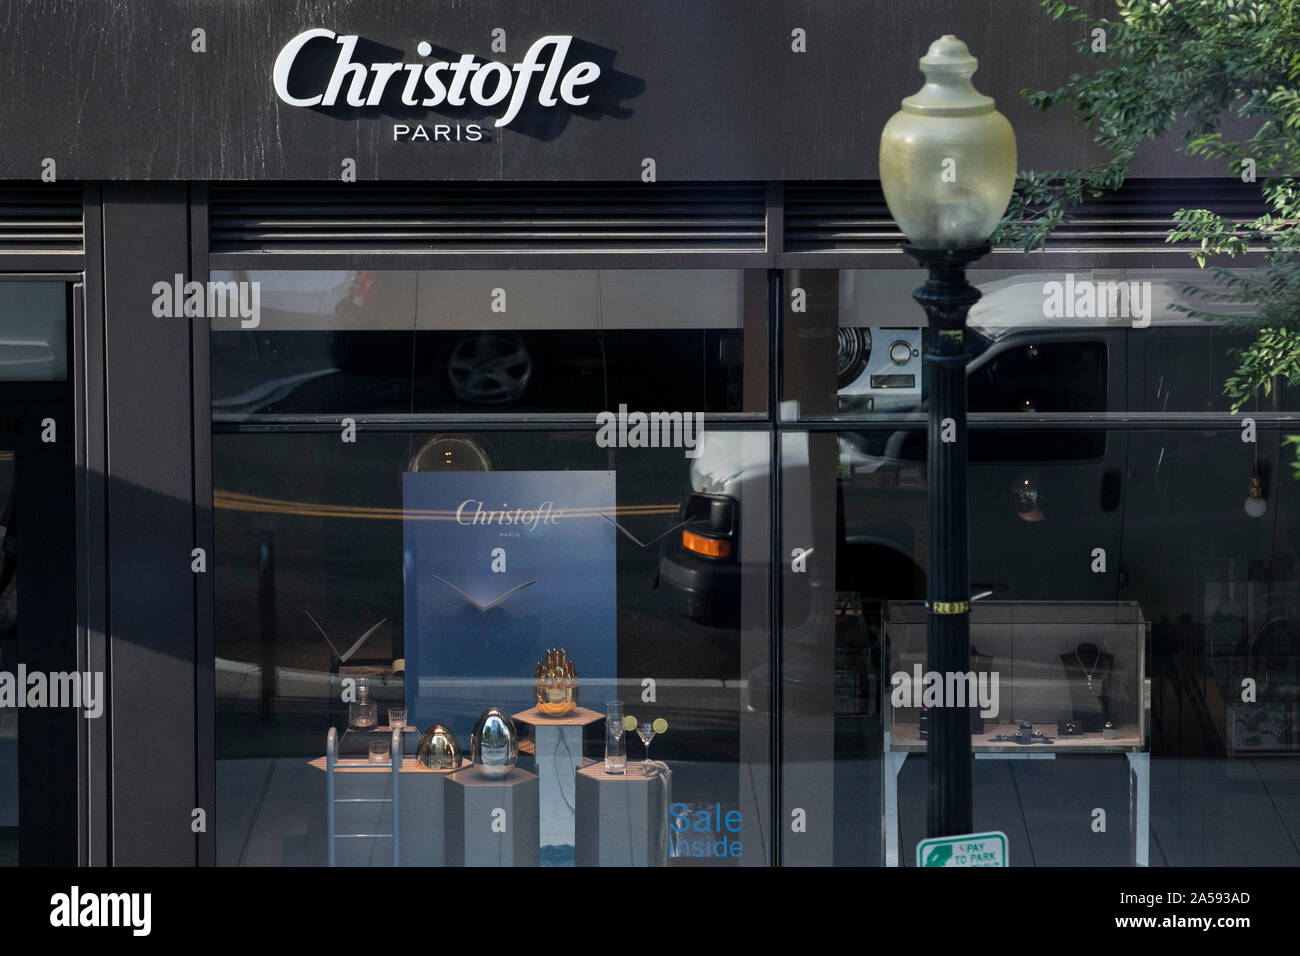 Un logo affiche à l'extérieur d'un magasin de détail Christofle situé au centre-ville de Washington, D.C. le 24 juillet 2019. Banque D'Images